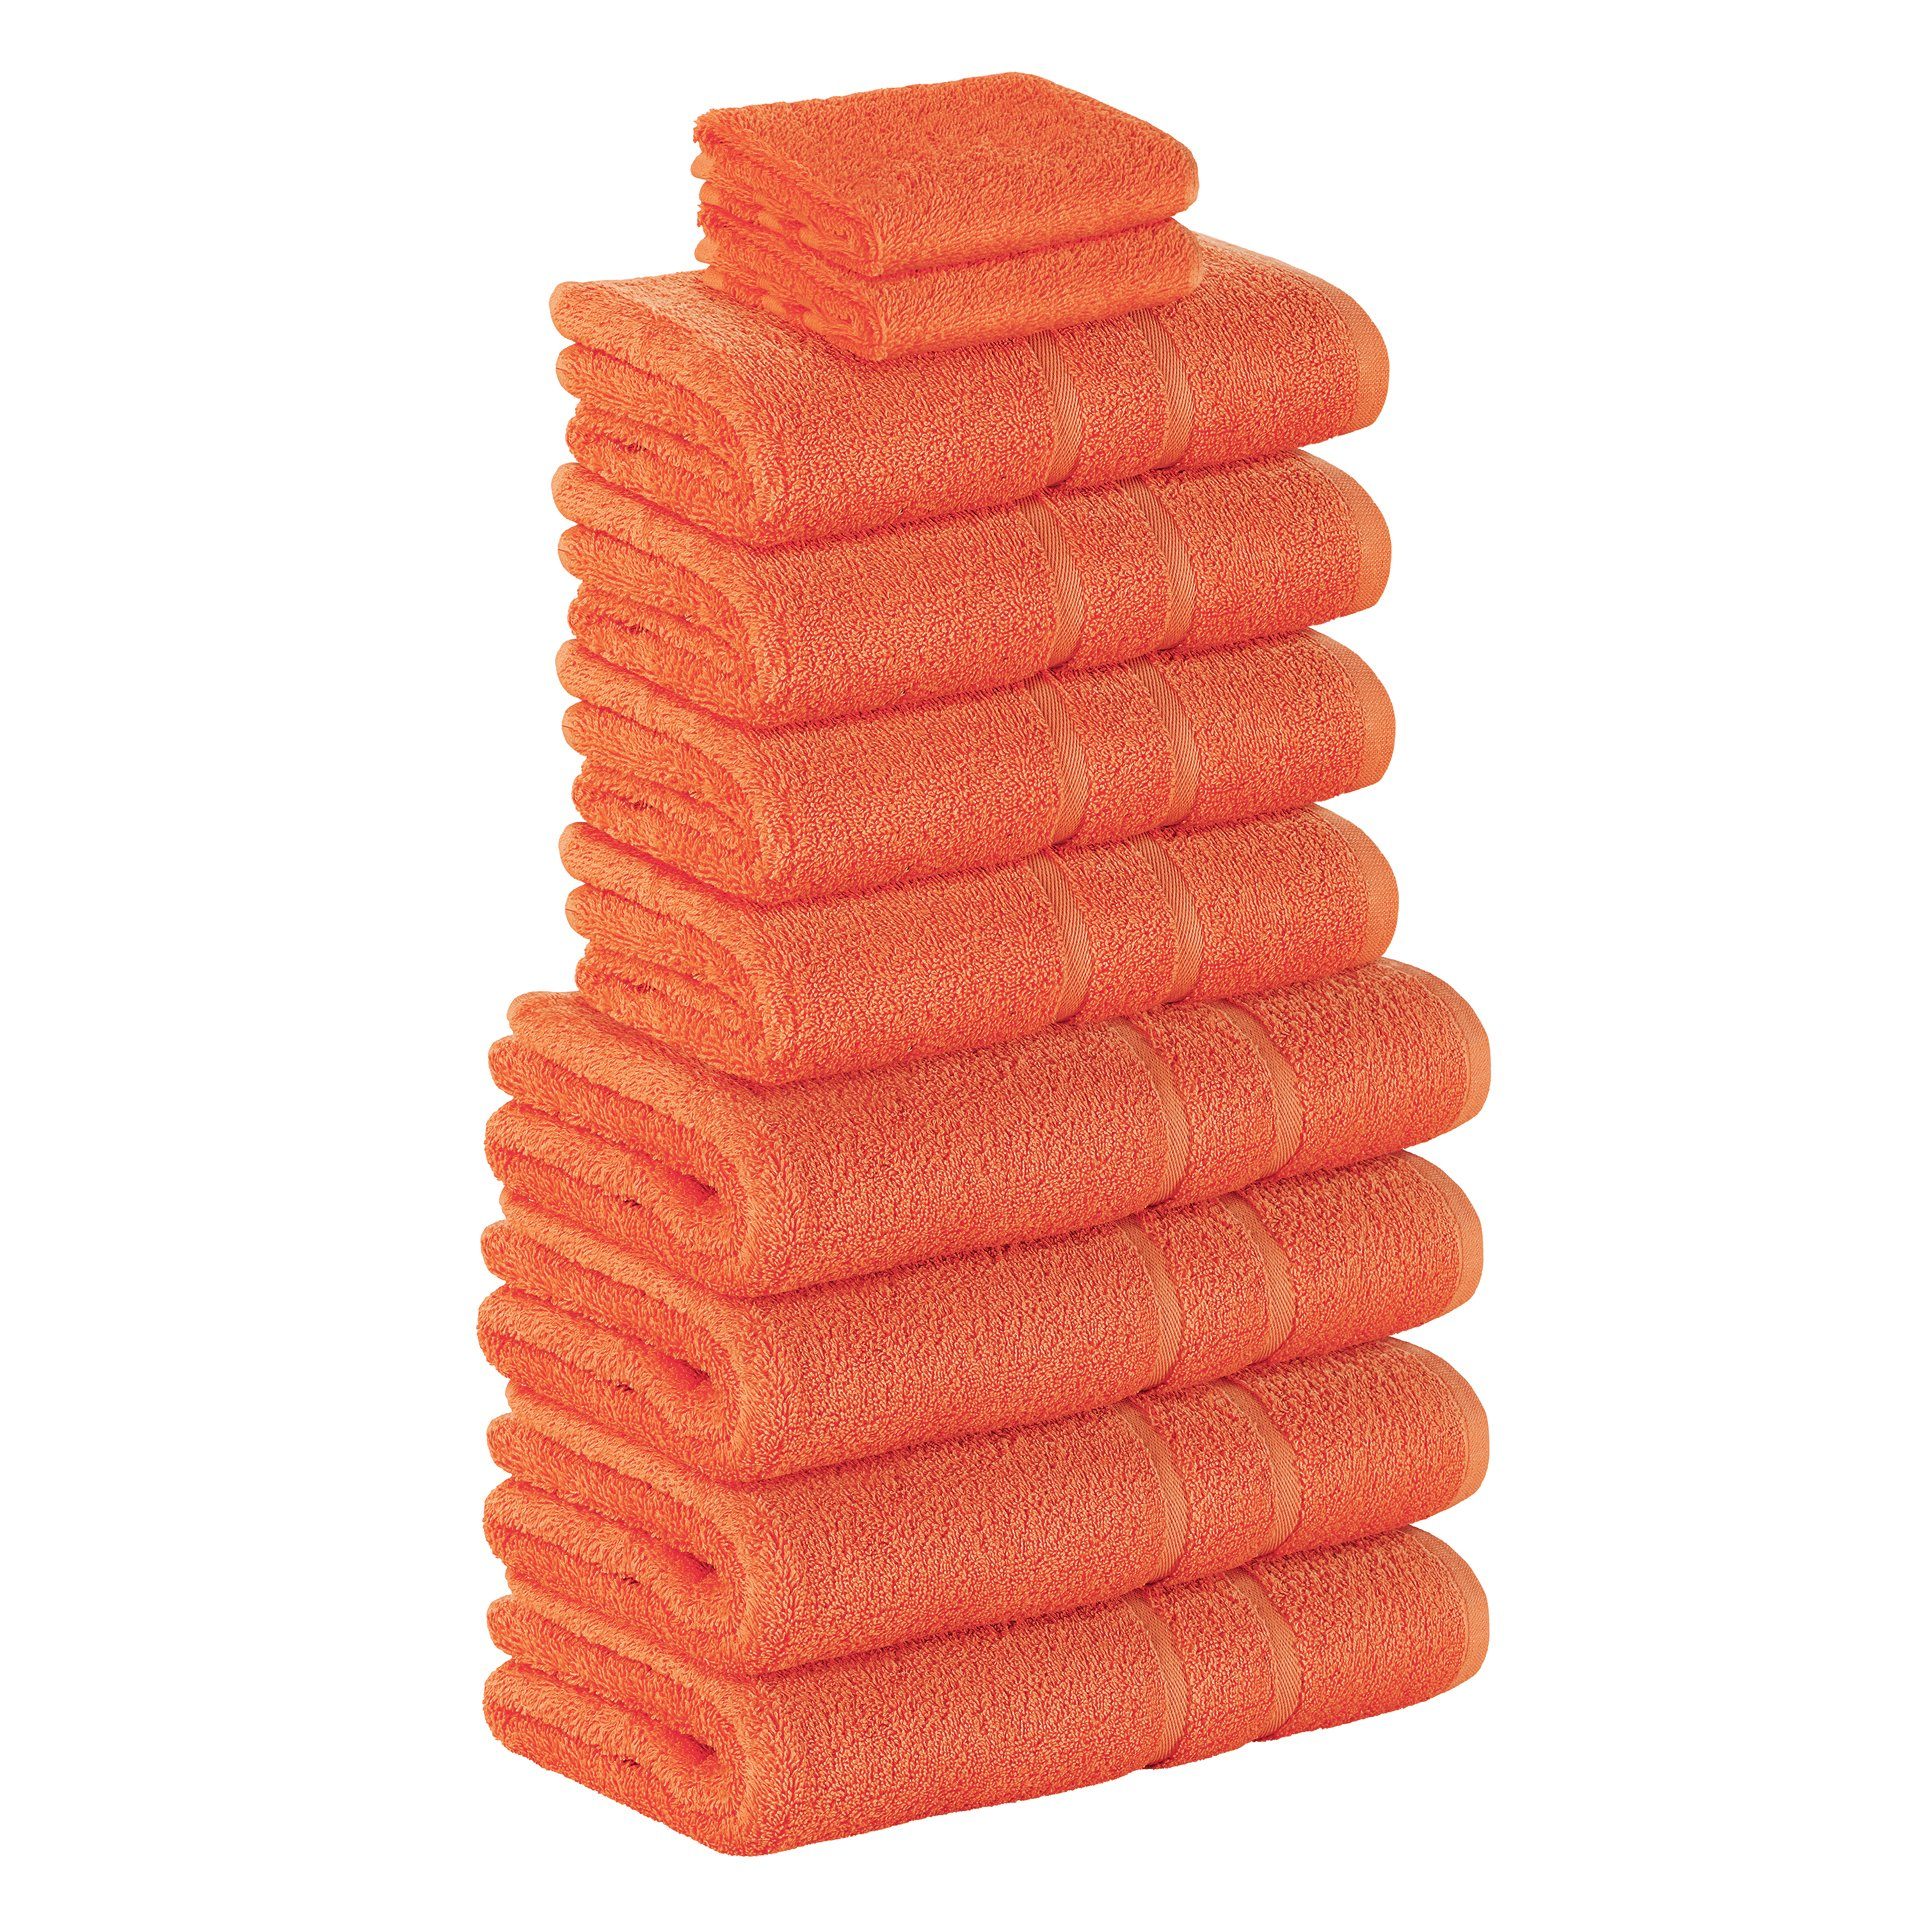 StickandShine Handtuch Set 2x Gästehandtuch 4x Handtücher 4x Duschtücher als SET in verschiedenen Farben (10 Teilig) 100% Baumwolle 500 GSM Frottee 10er Handtuch Pack, (Spar-set), 100% Baumwolle 500 GSM Orange